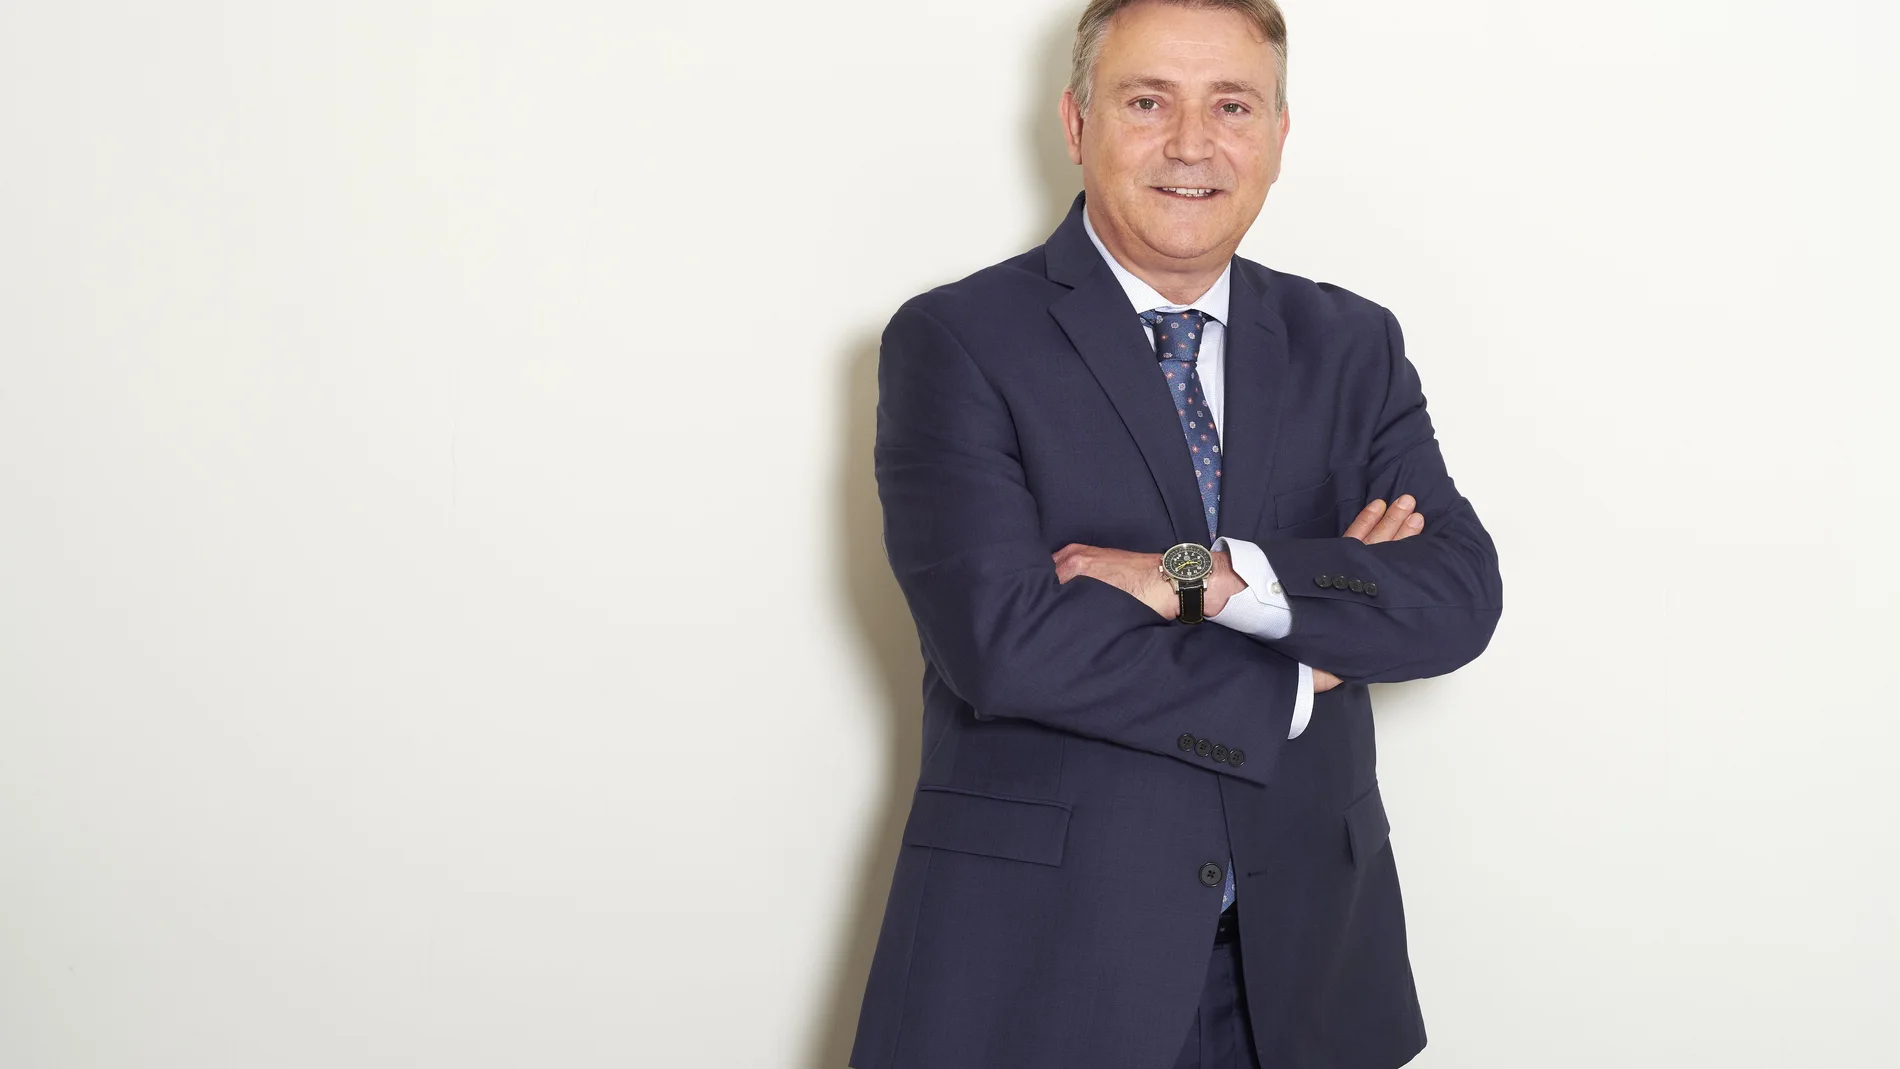 Carlos Peralta, directos general de Importaciones y Exportaciones de Varma